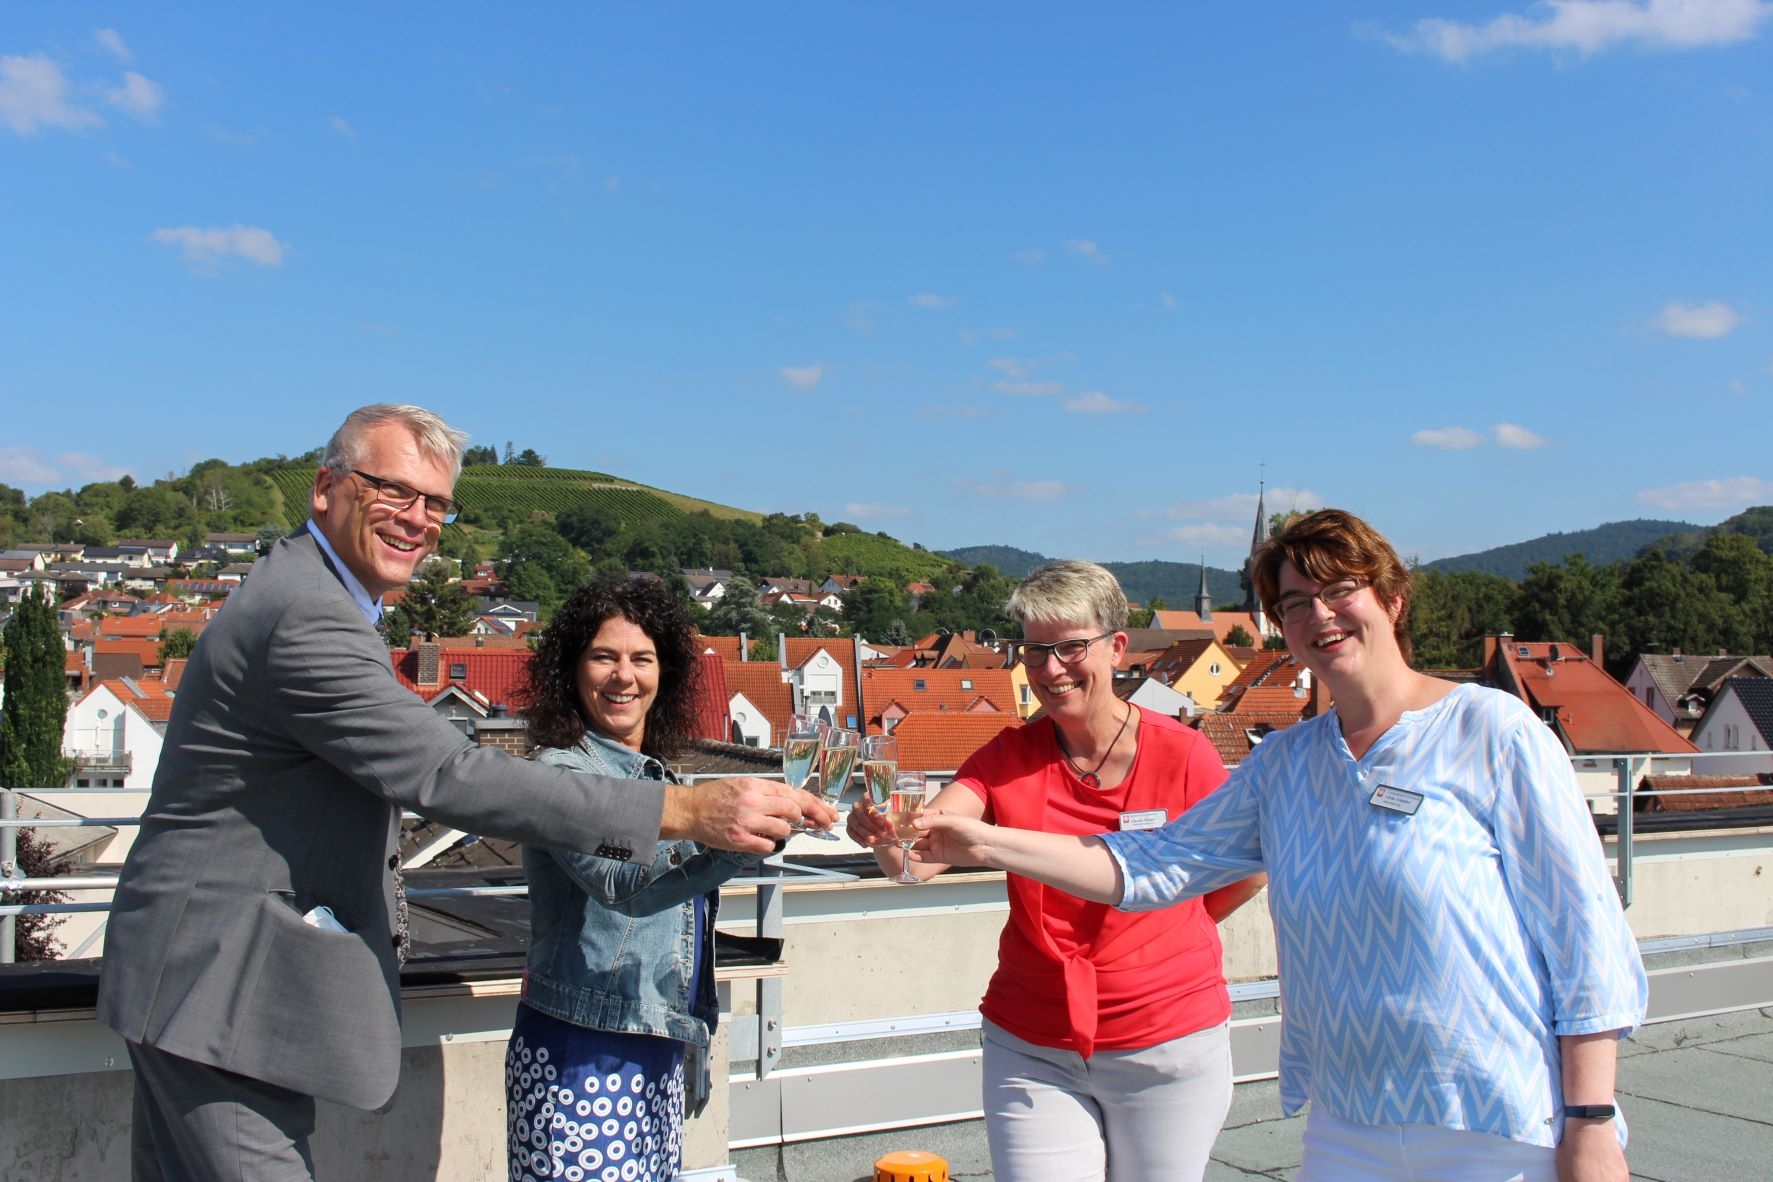 Vier Personen auf dem Dach eines Gebäudes (Caritasverband Darmstadt e. V.)